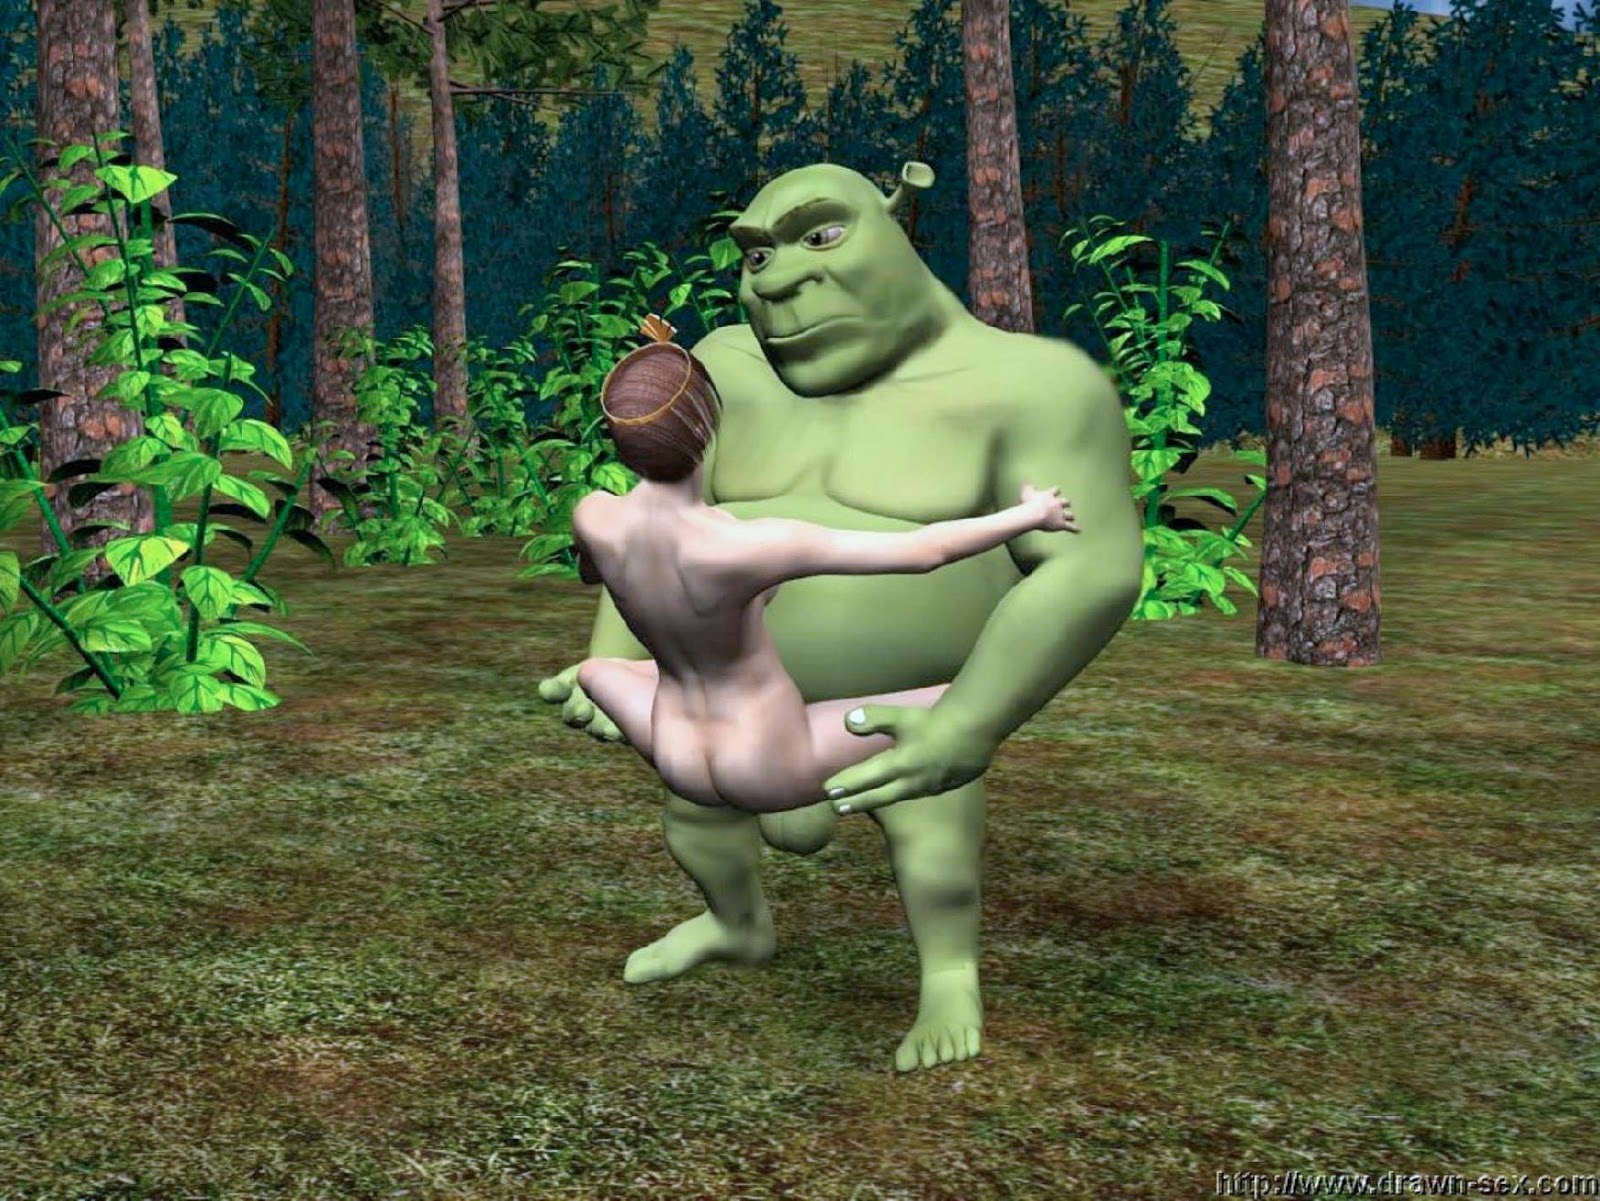 Porn Shrek